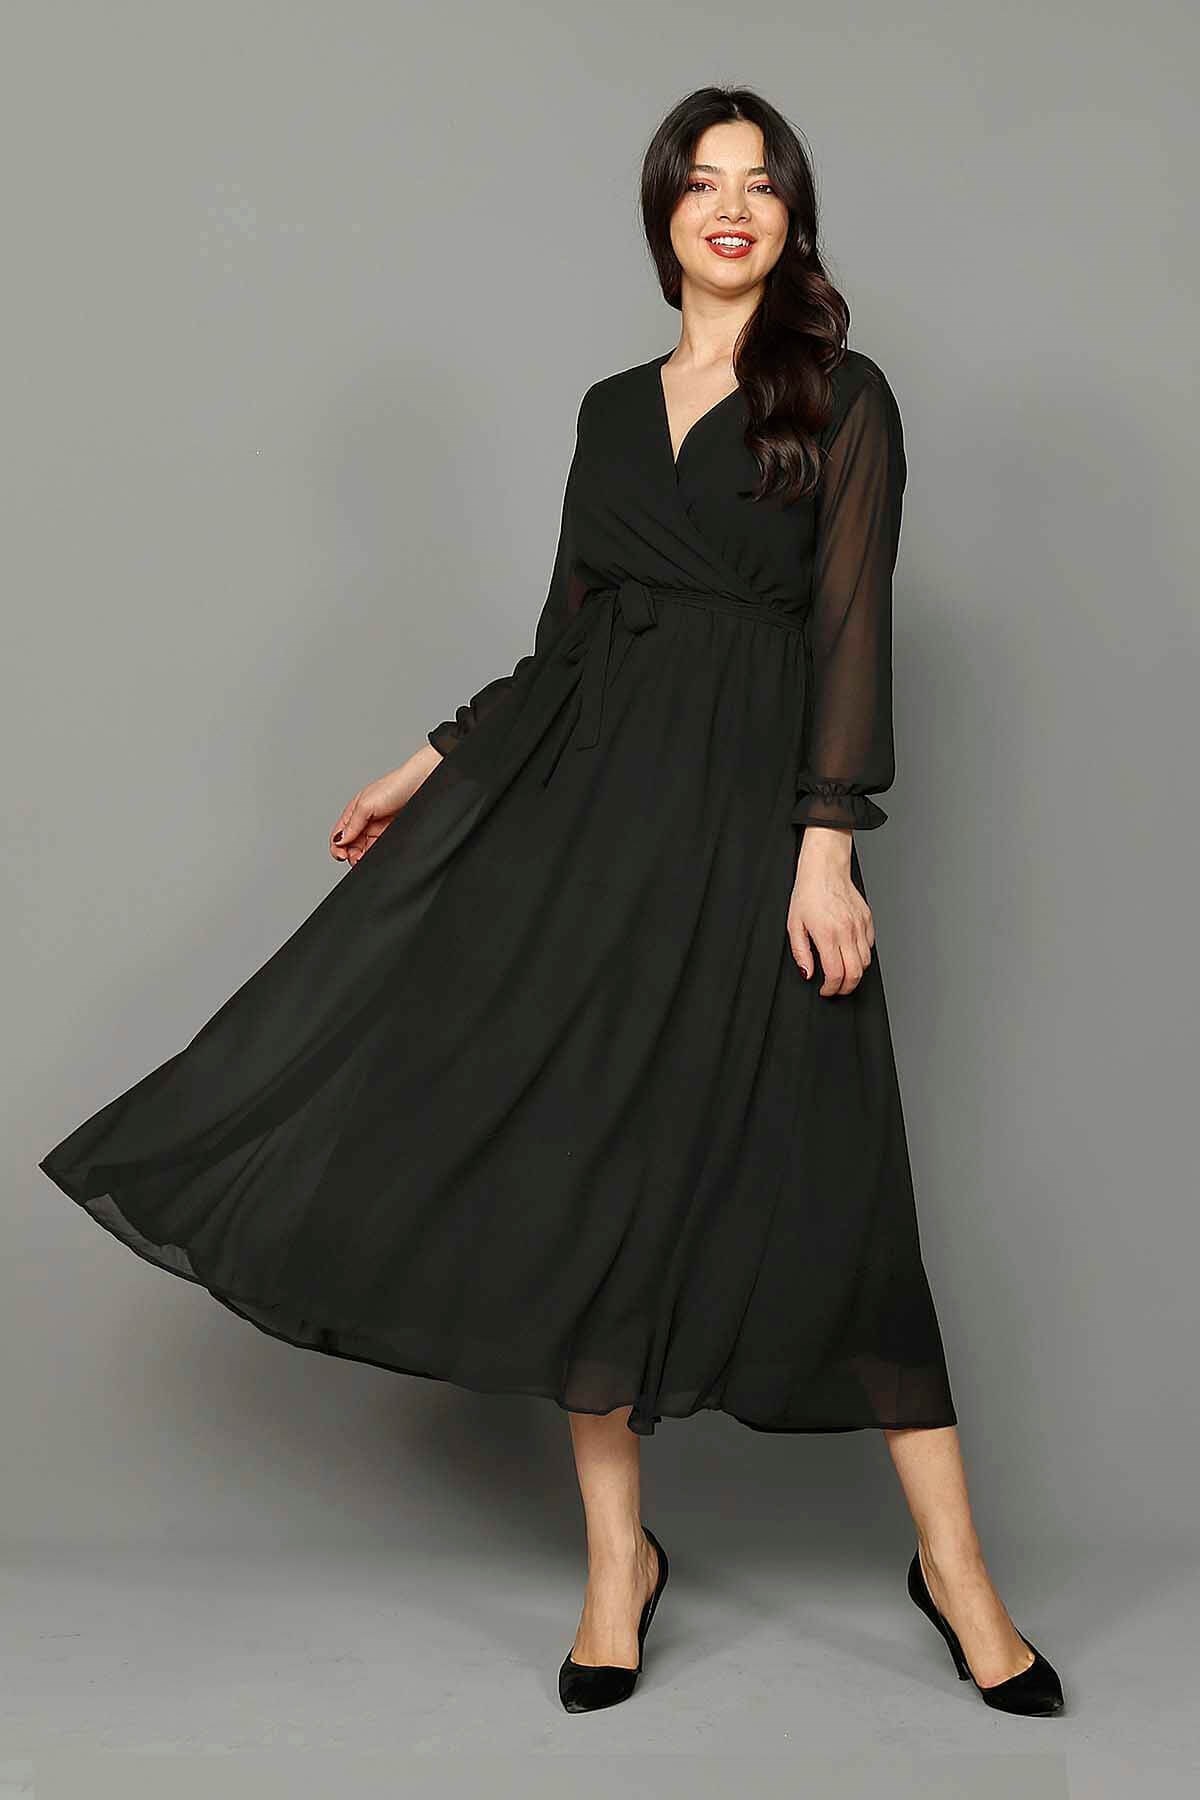 Siyah Şifon Elbise - Moda Kapımda İle Kapınızda!